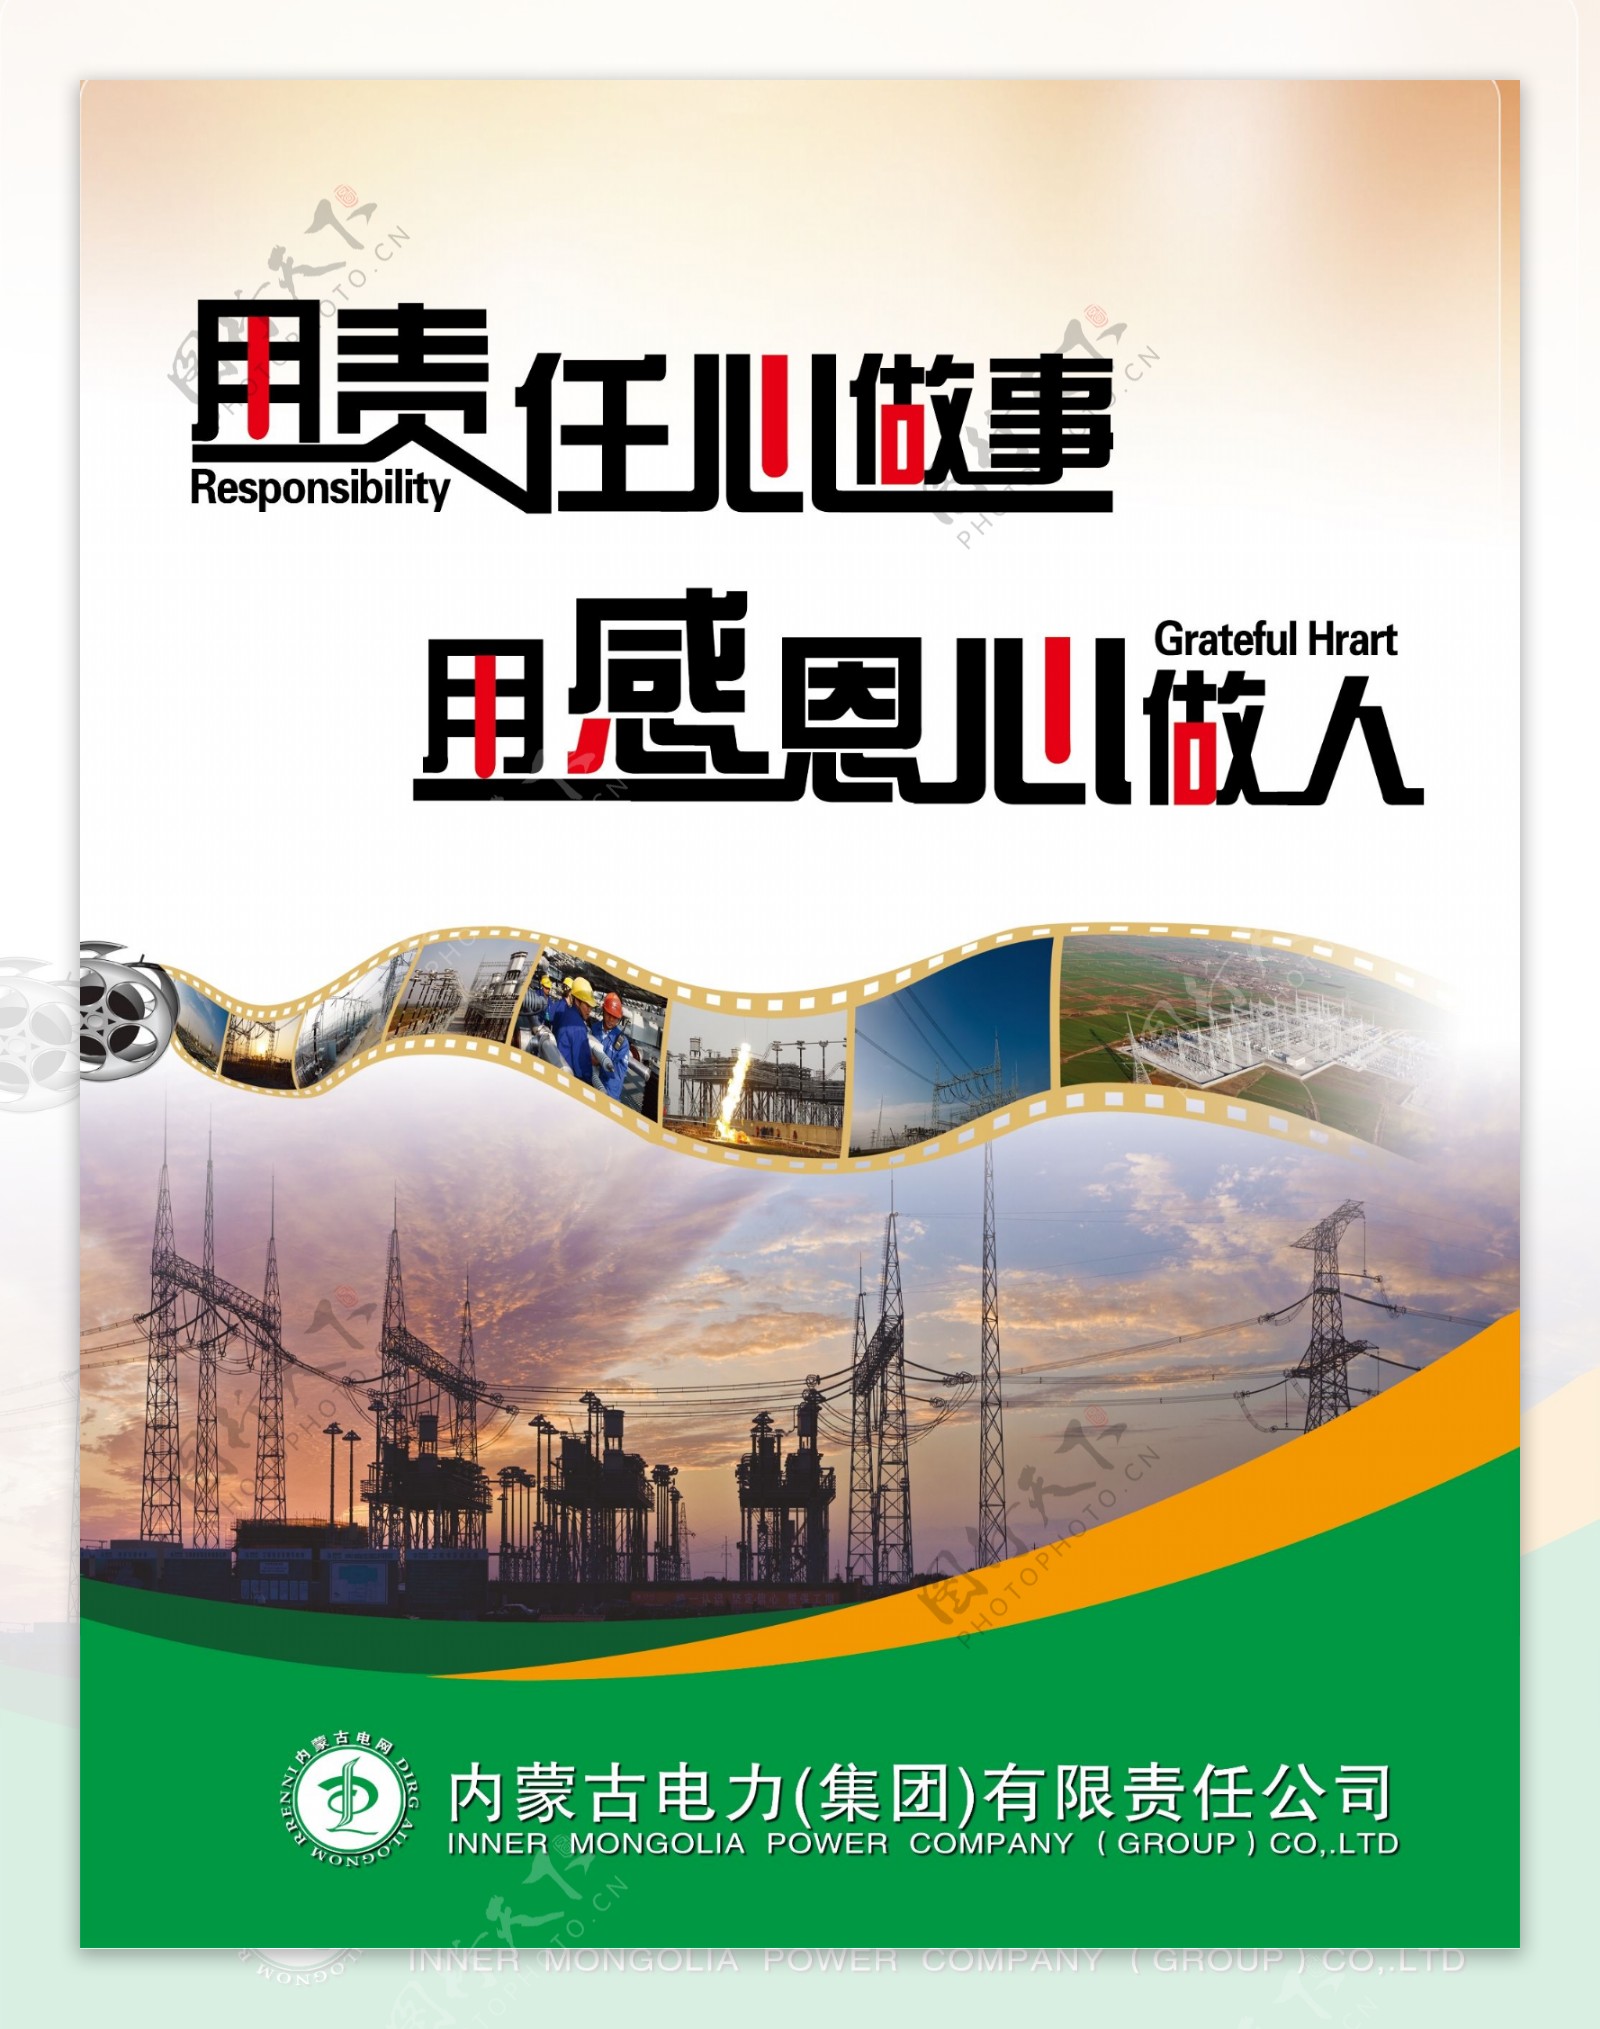 内蒙古电力公司宣传牌